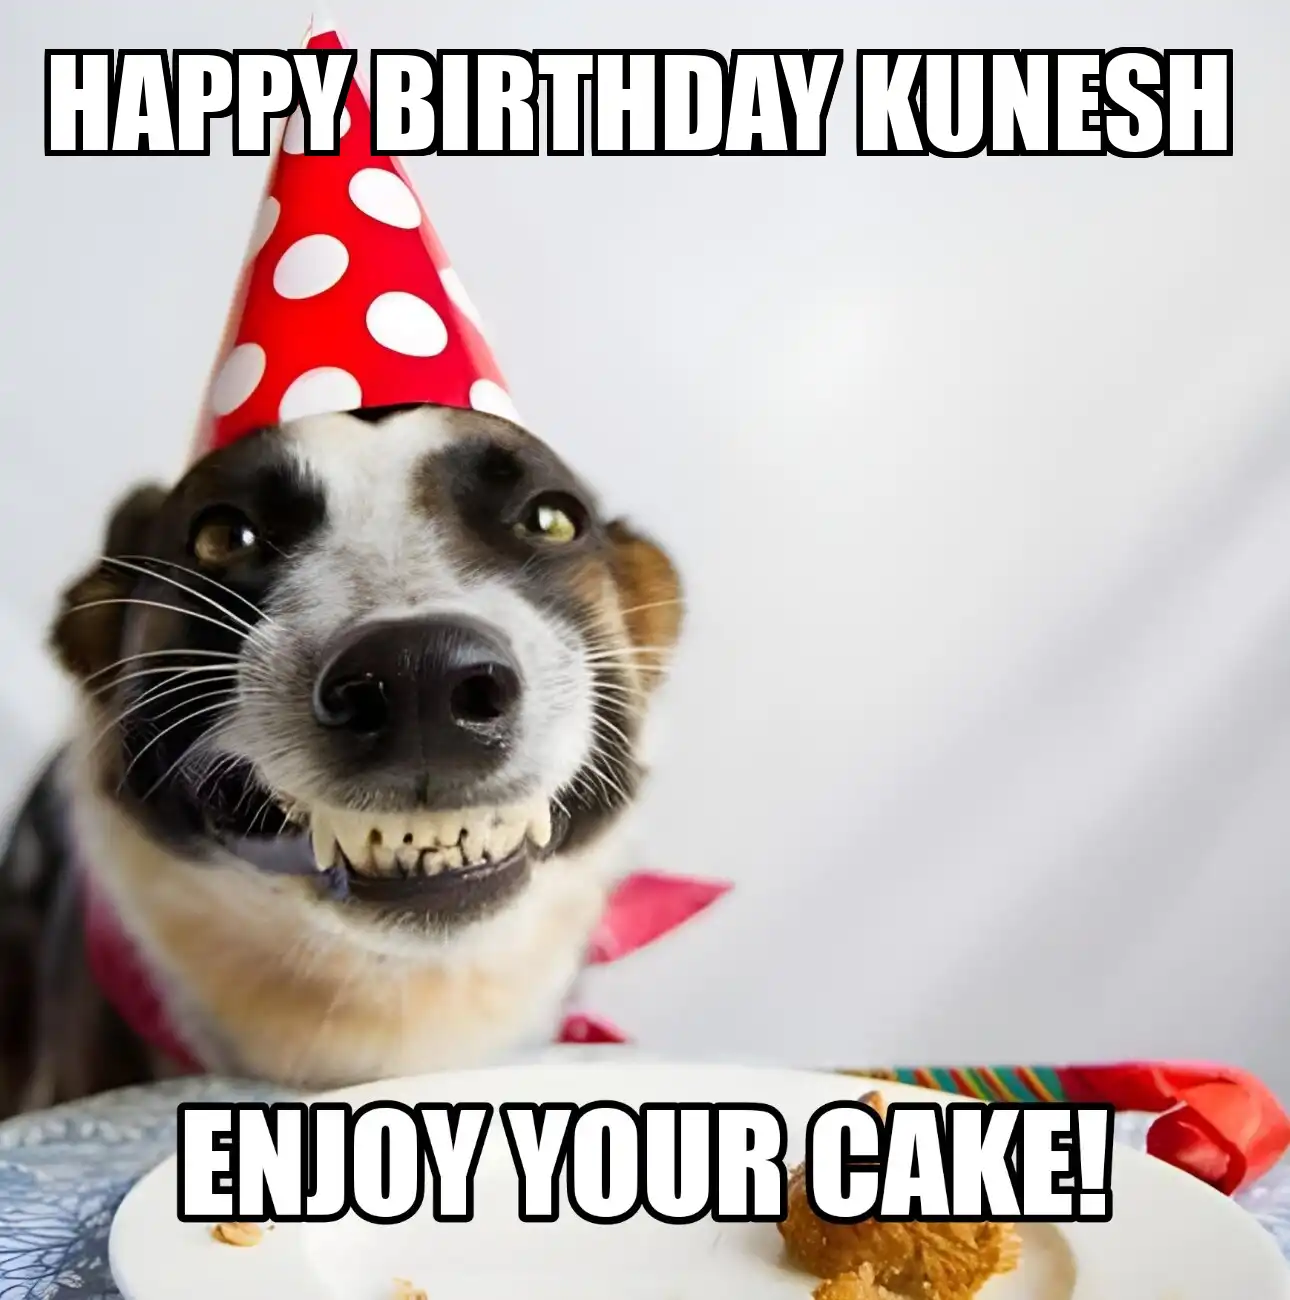 Happy Birthday Kunesh Enjoy Your Cake Dog Meme